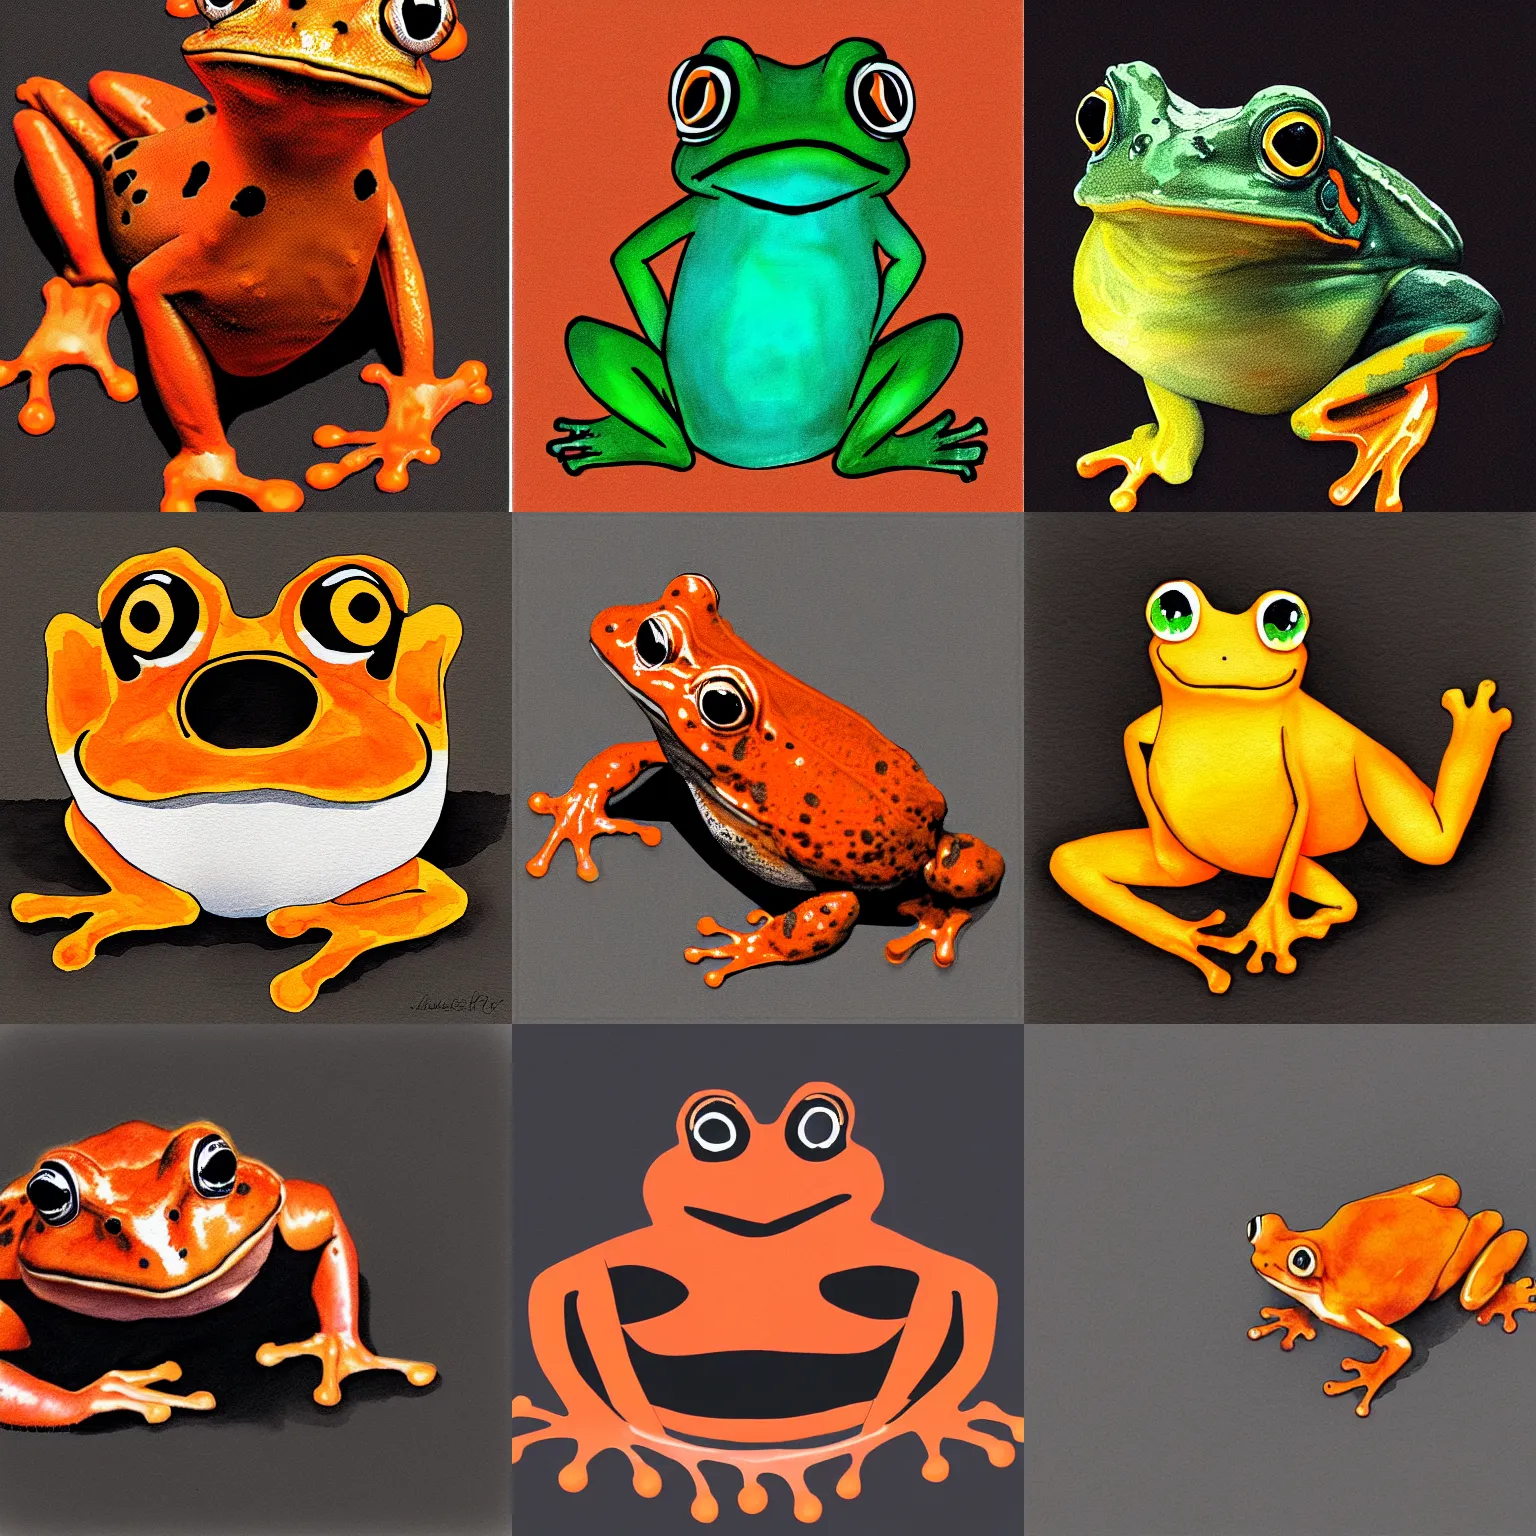 Prompt: orange frog, black background, digital watercolor